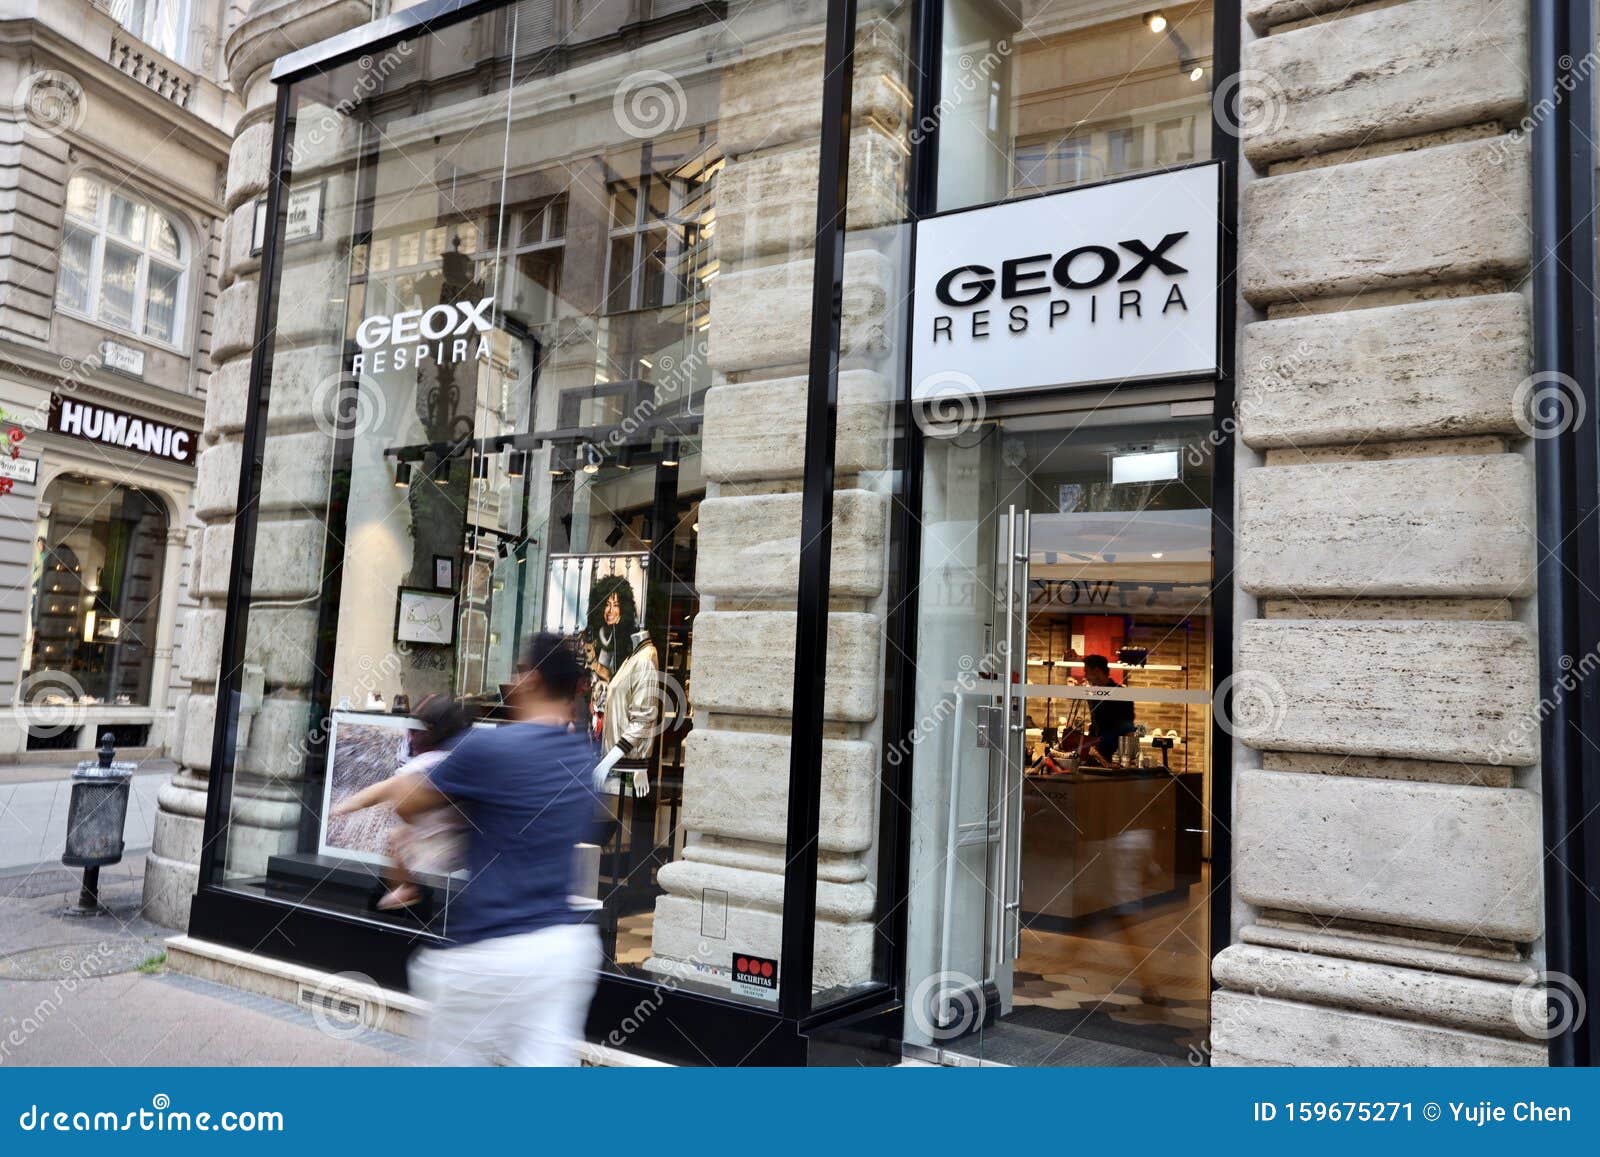 vrijwilliger Behoort laser Geox-winkels in Boedapest redactionele foto. Image of boedapest - 159675271